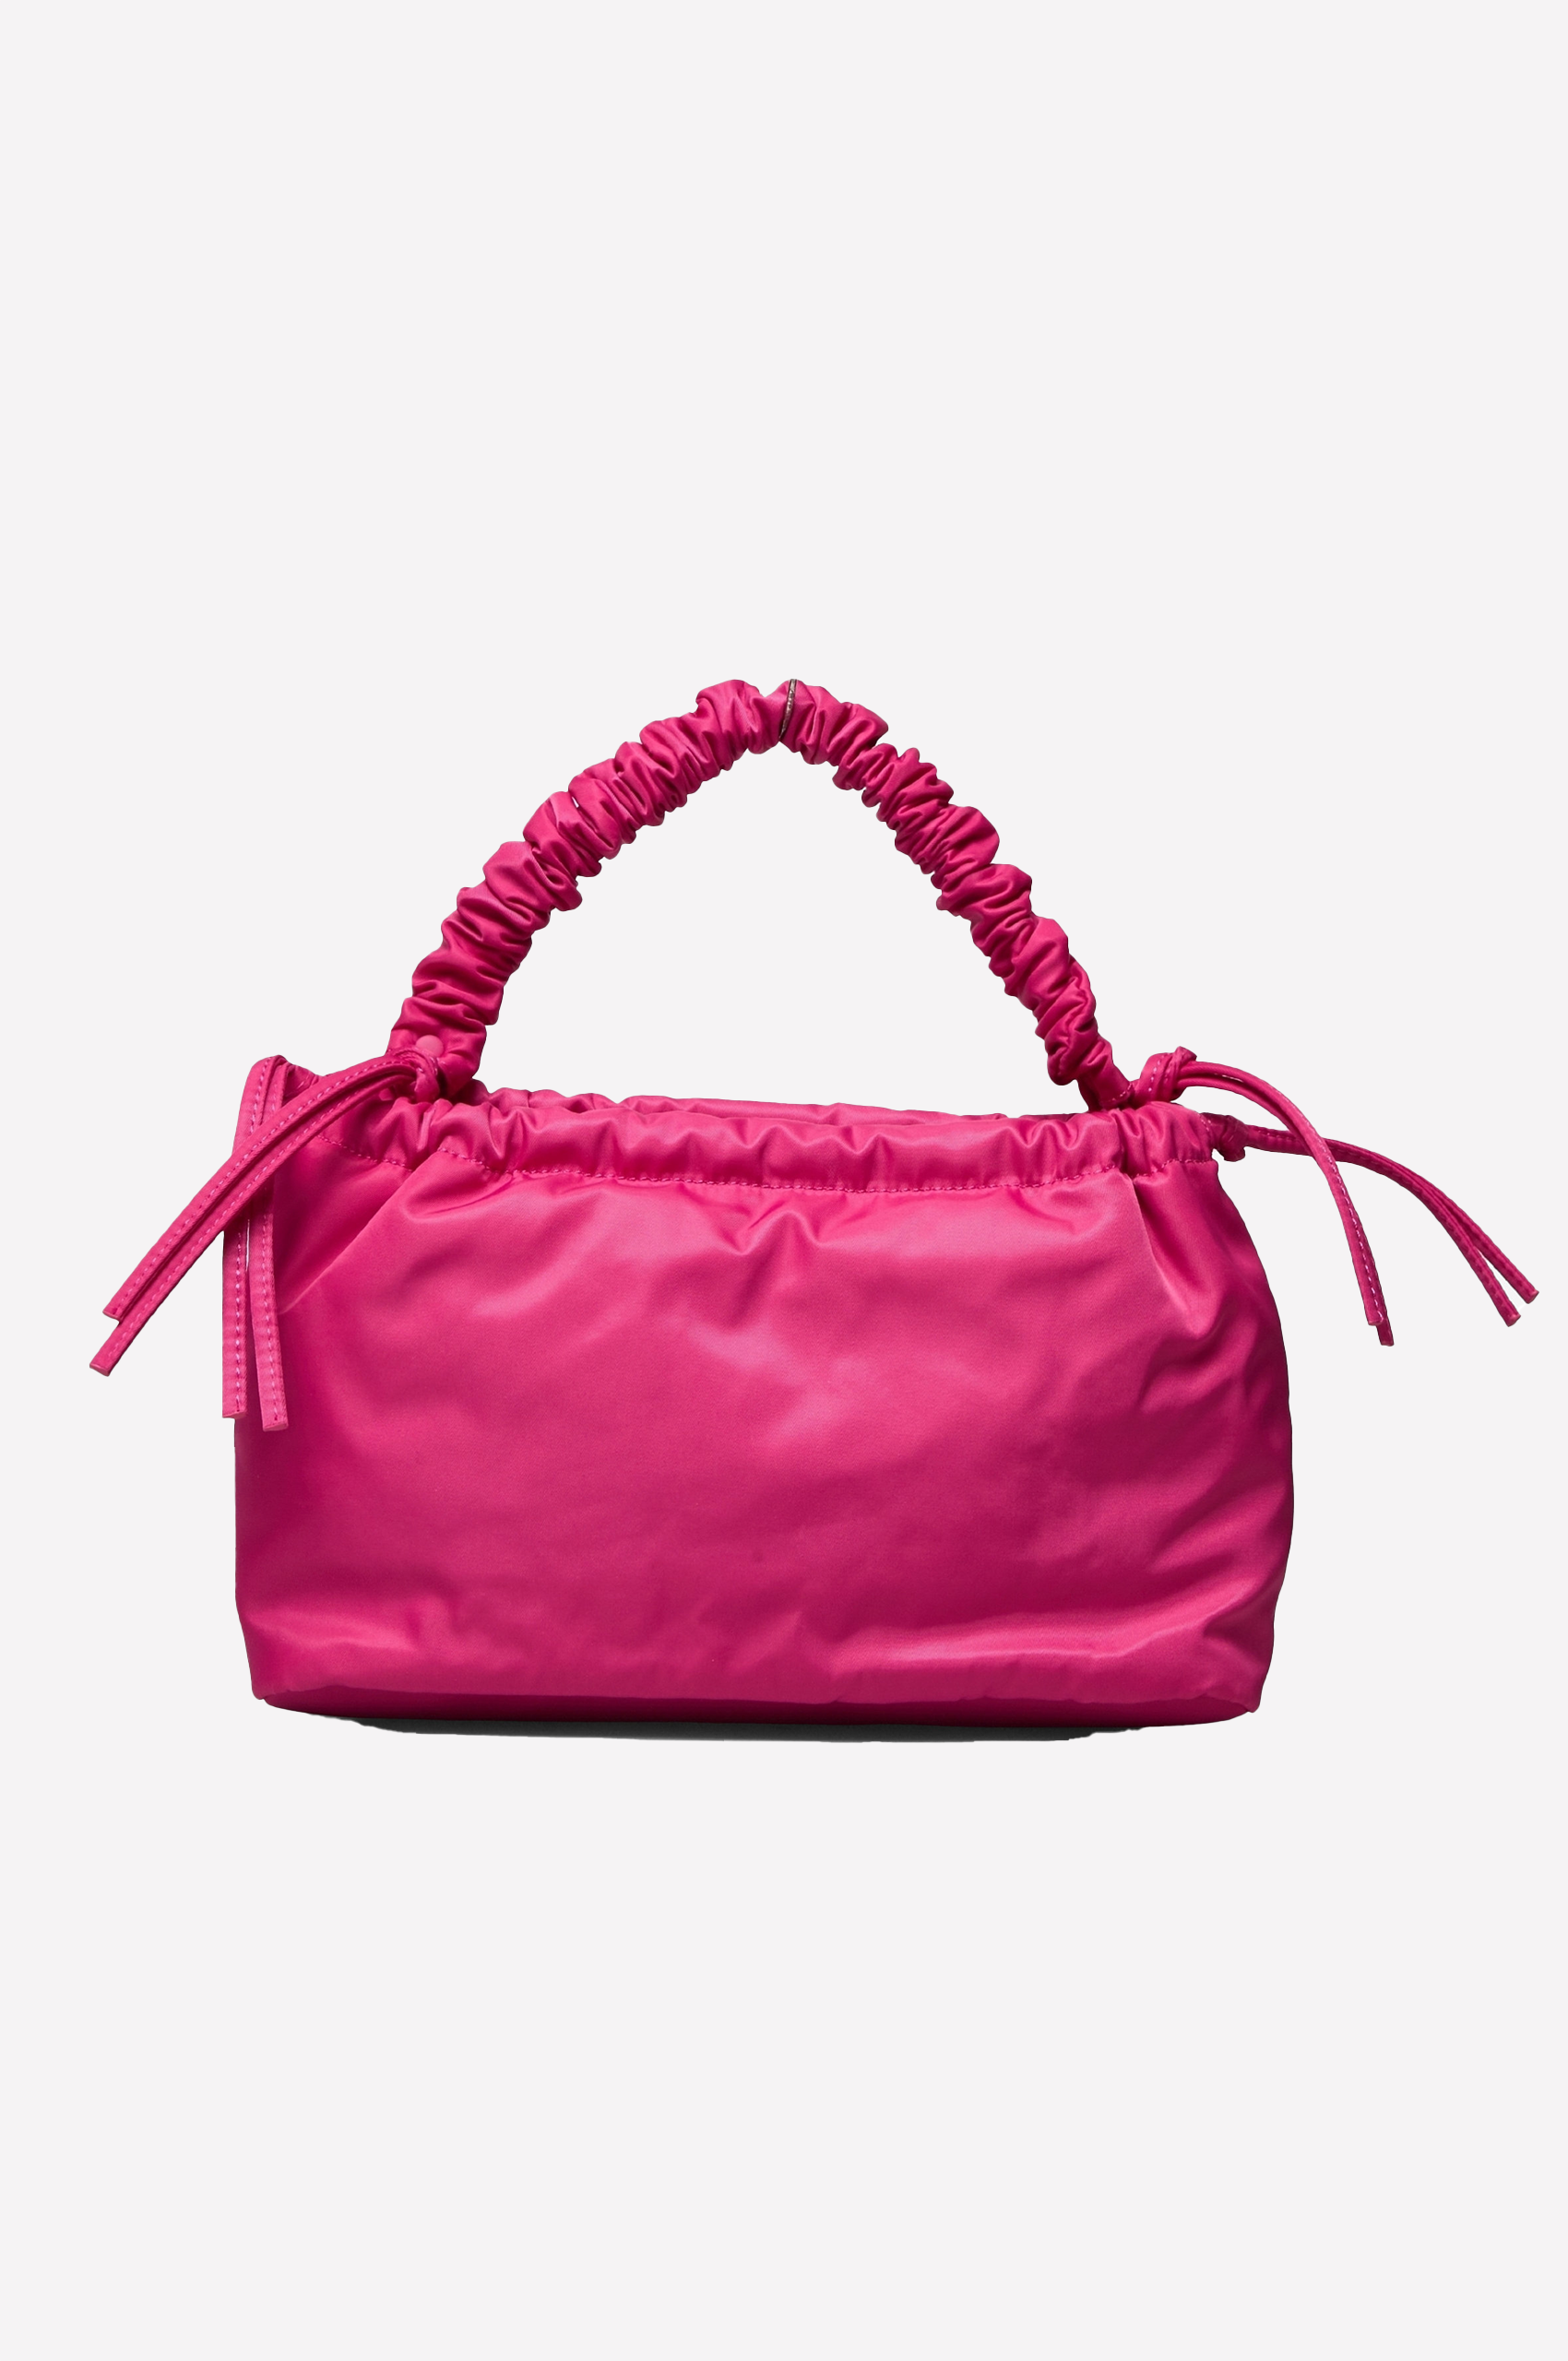 HVISK Arcadia Twill Tasche in Pink, Ansicht Frontal